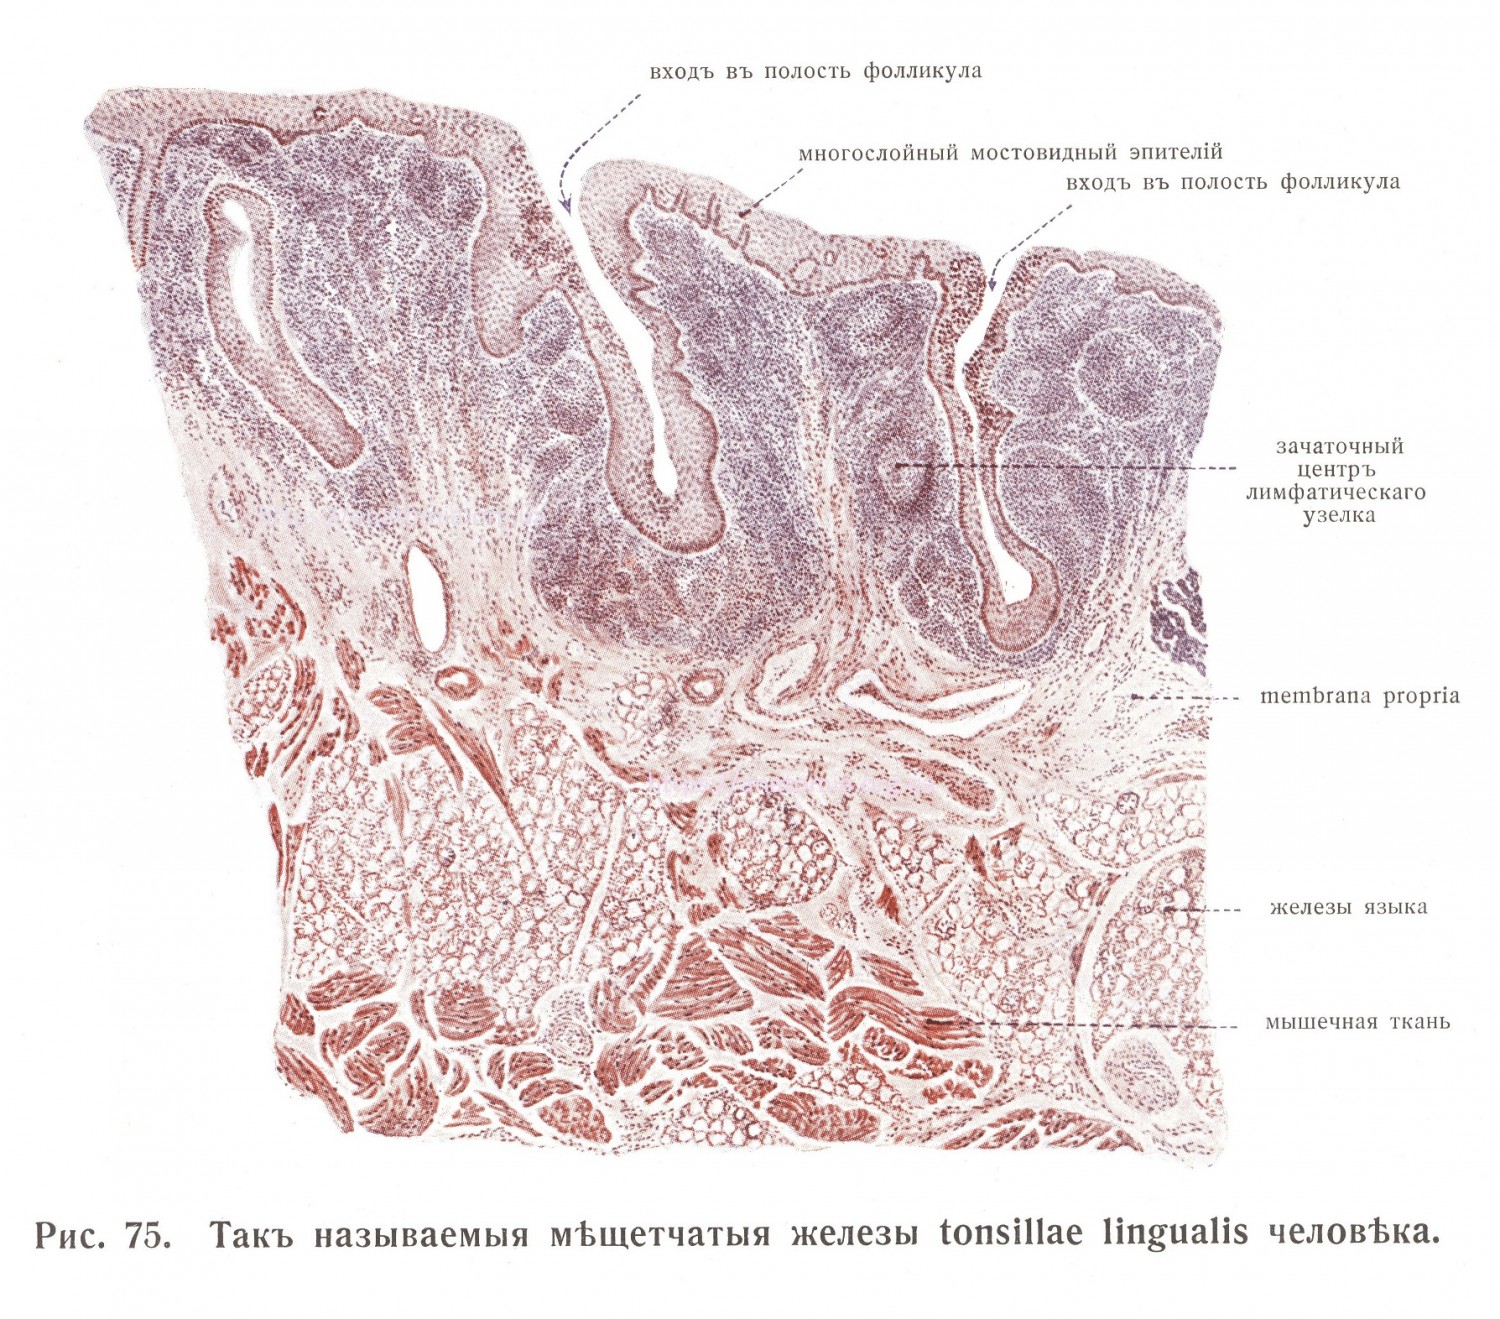 Железы tonsillae lingualis человека